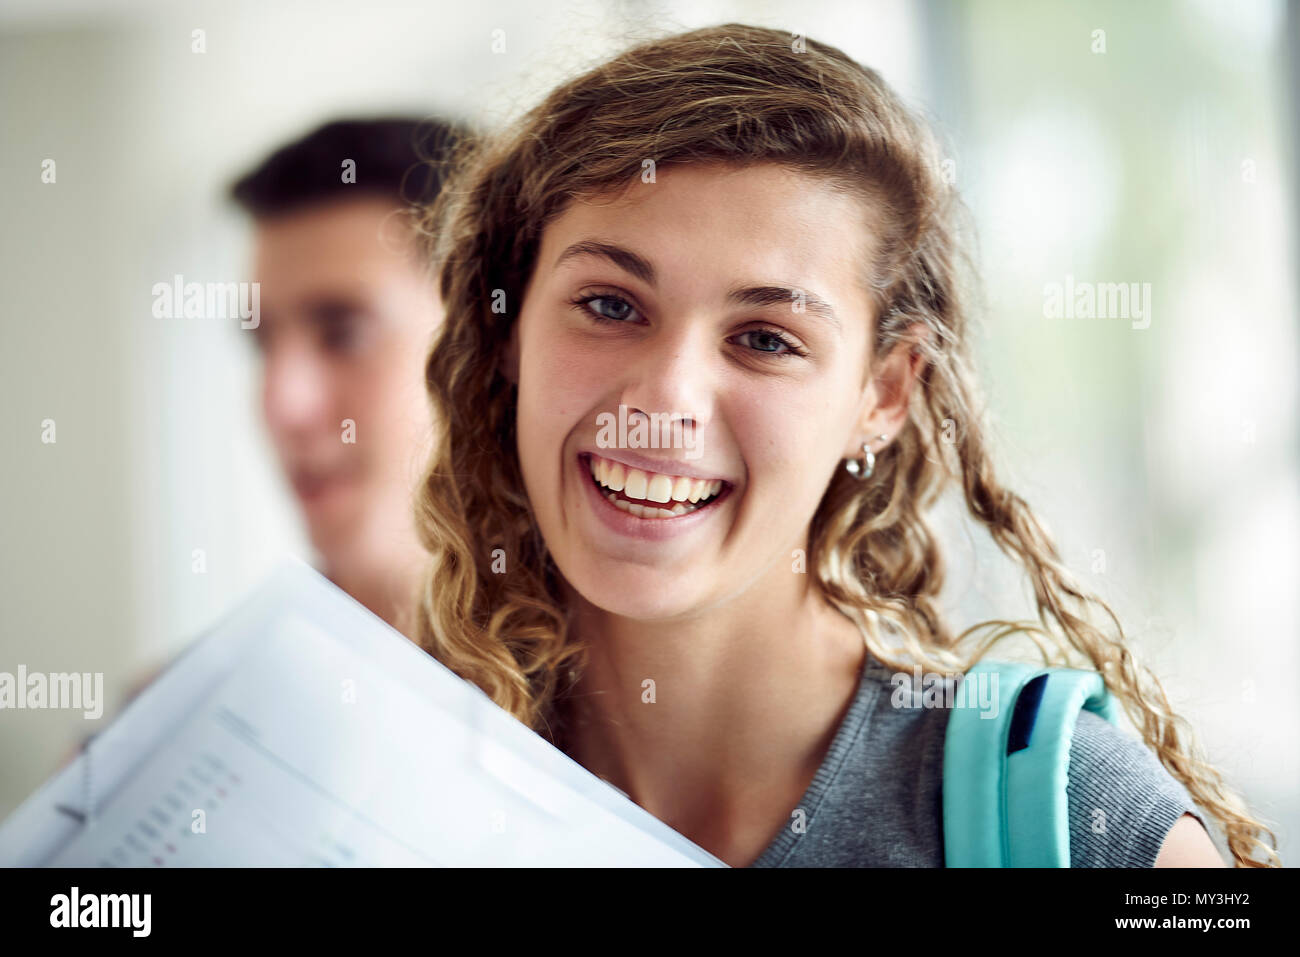 Female high school student smiling, portrait Banque D'Images